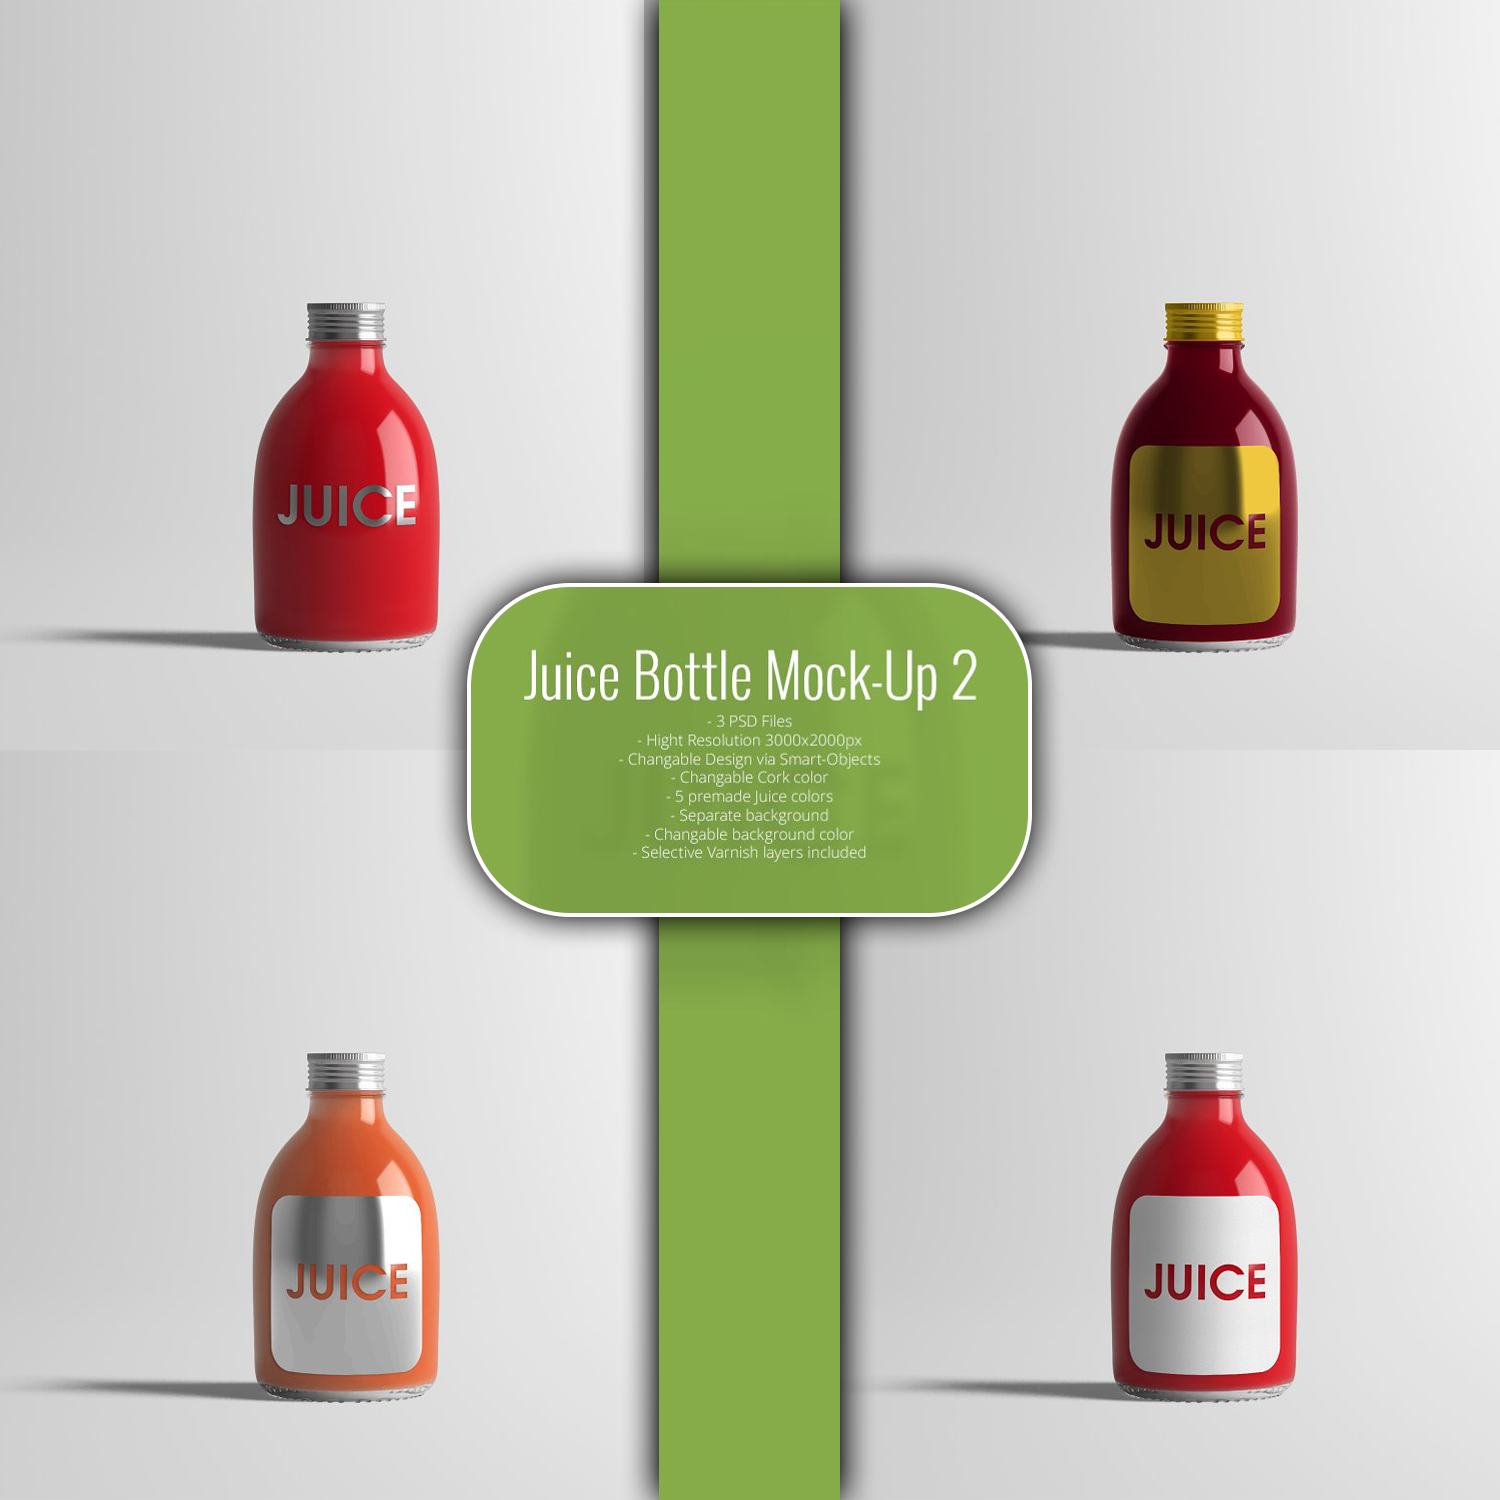 Juice bottle mock up 2 preview.